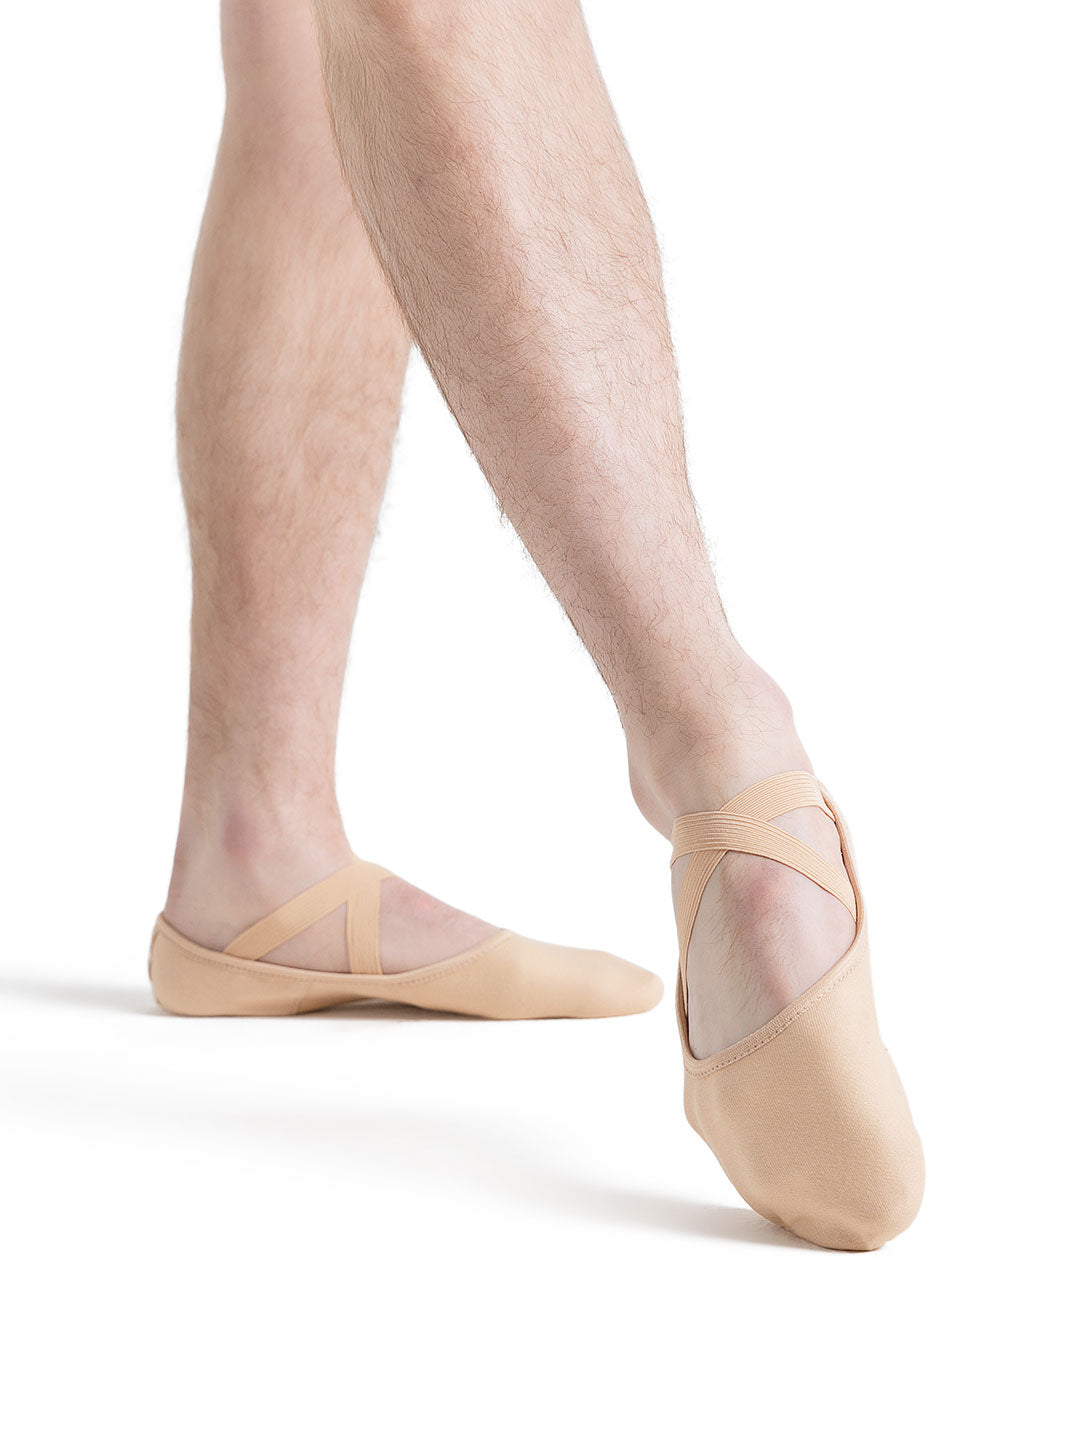 Capezio Hanami Canvas Split Sole Ballet Shoe Adults Nude 2037W